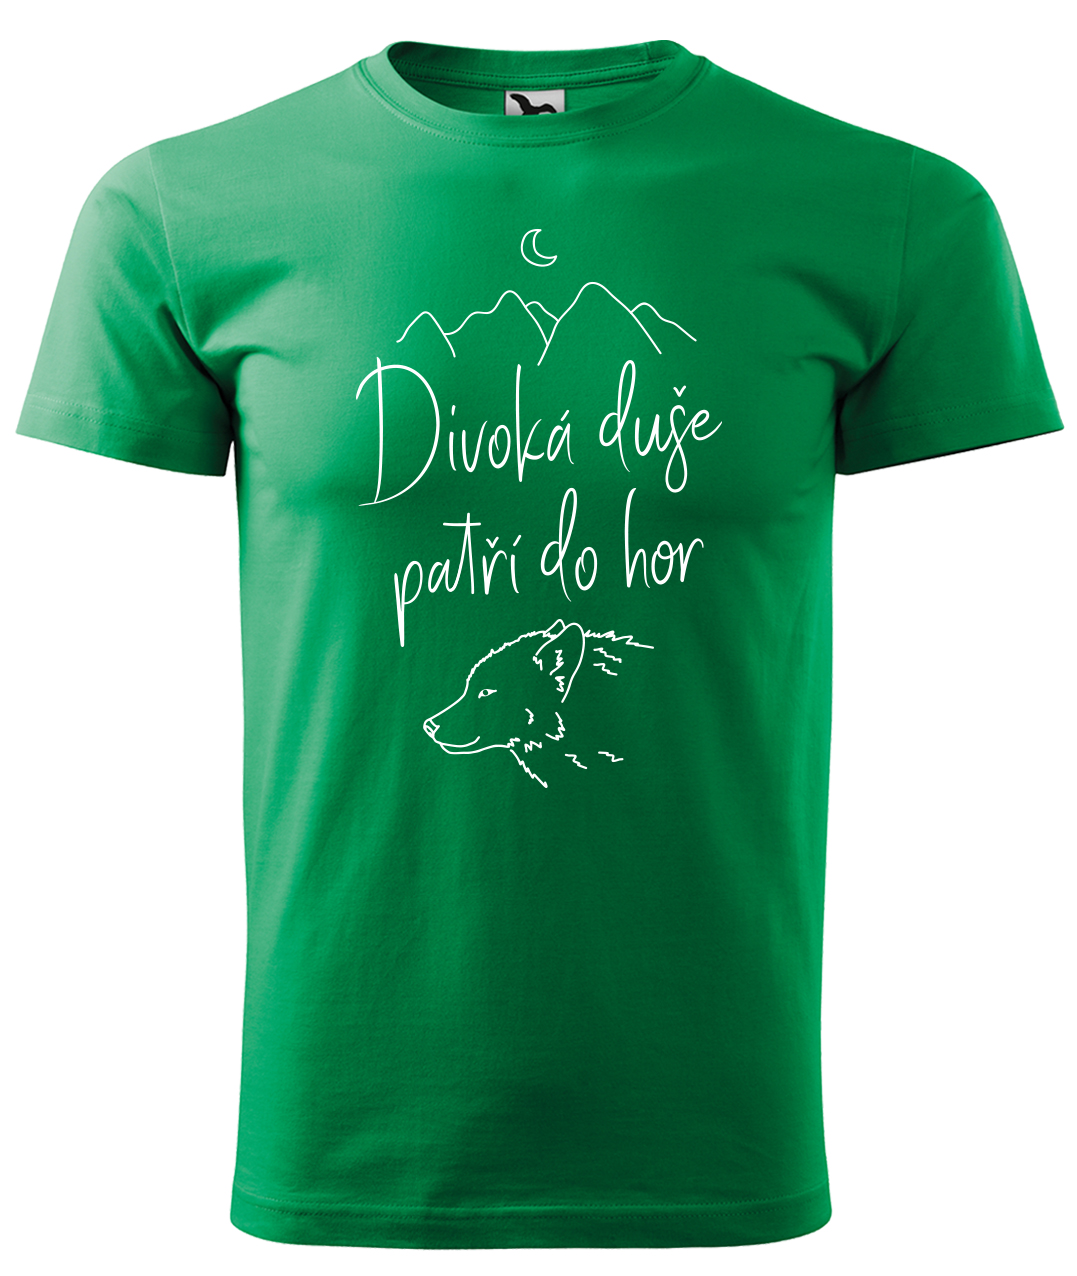 Dětské tričko na hory - Divoká duše patří do hor Velikost: 6 let / 122 cm, Barva: Středně zelená (16), Délka rukávu: Krátký rukáv